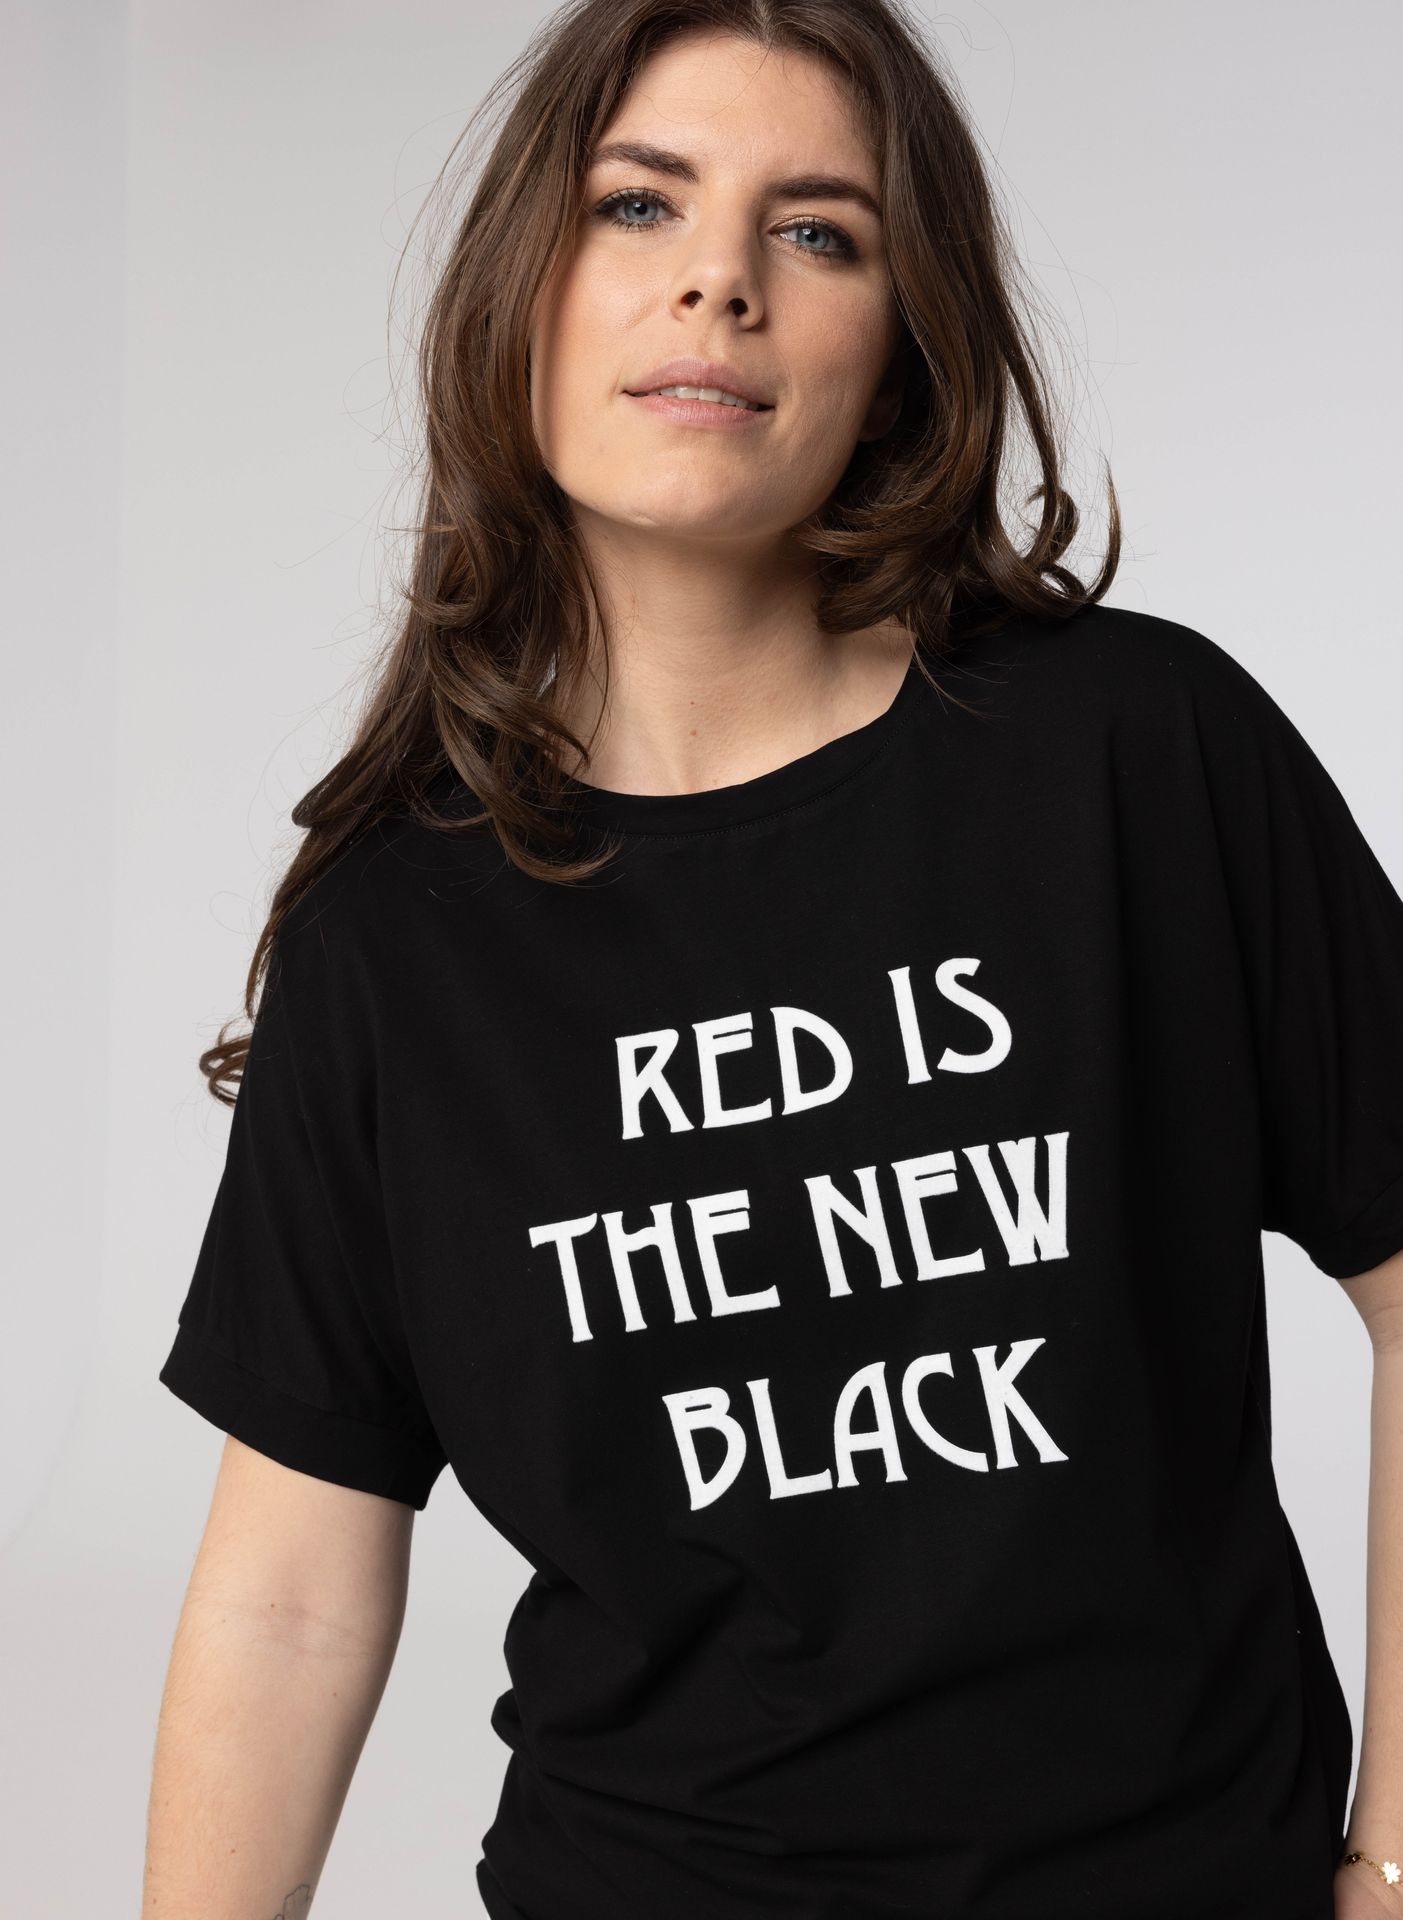 Norah Zwart shirt met tekst black 214240-001